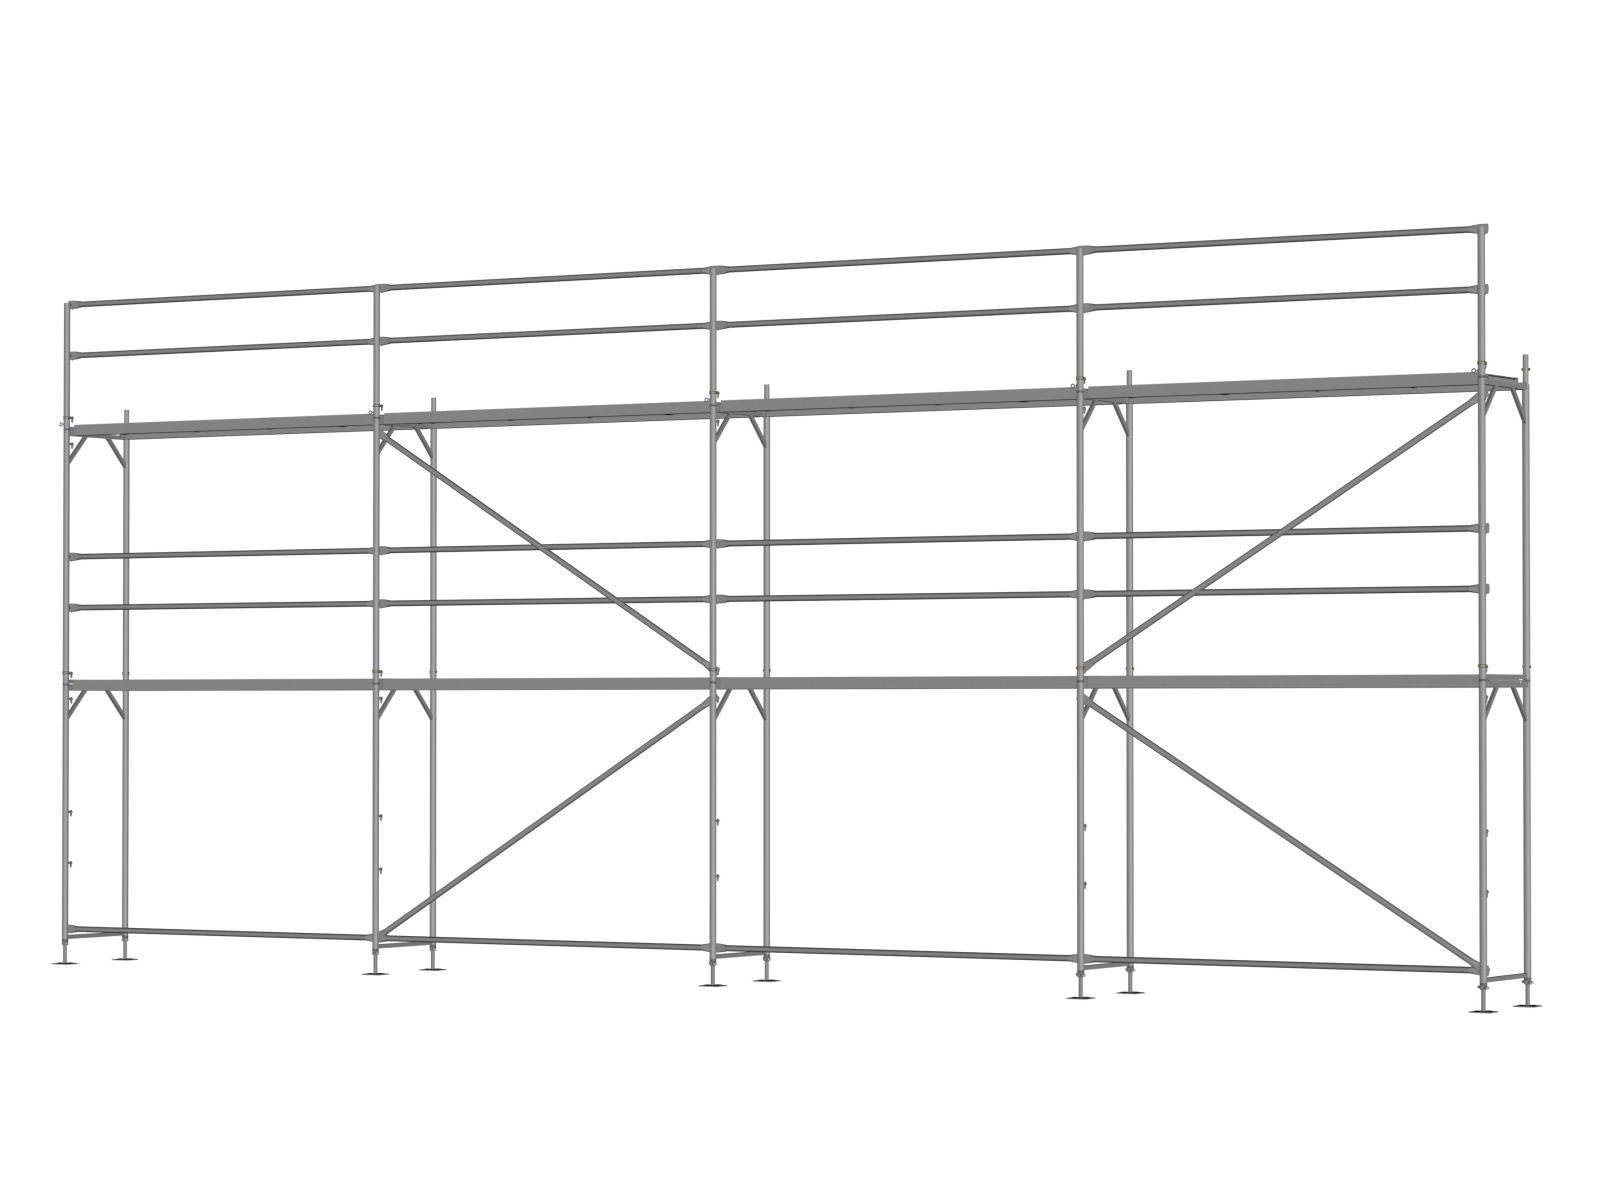 Stahl Traufseitengerüst 72 qm - 3,0 m Felder - 12 m lang - 6 m Arbeitshöhe - Basis-Gerüst